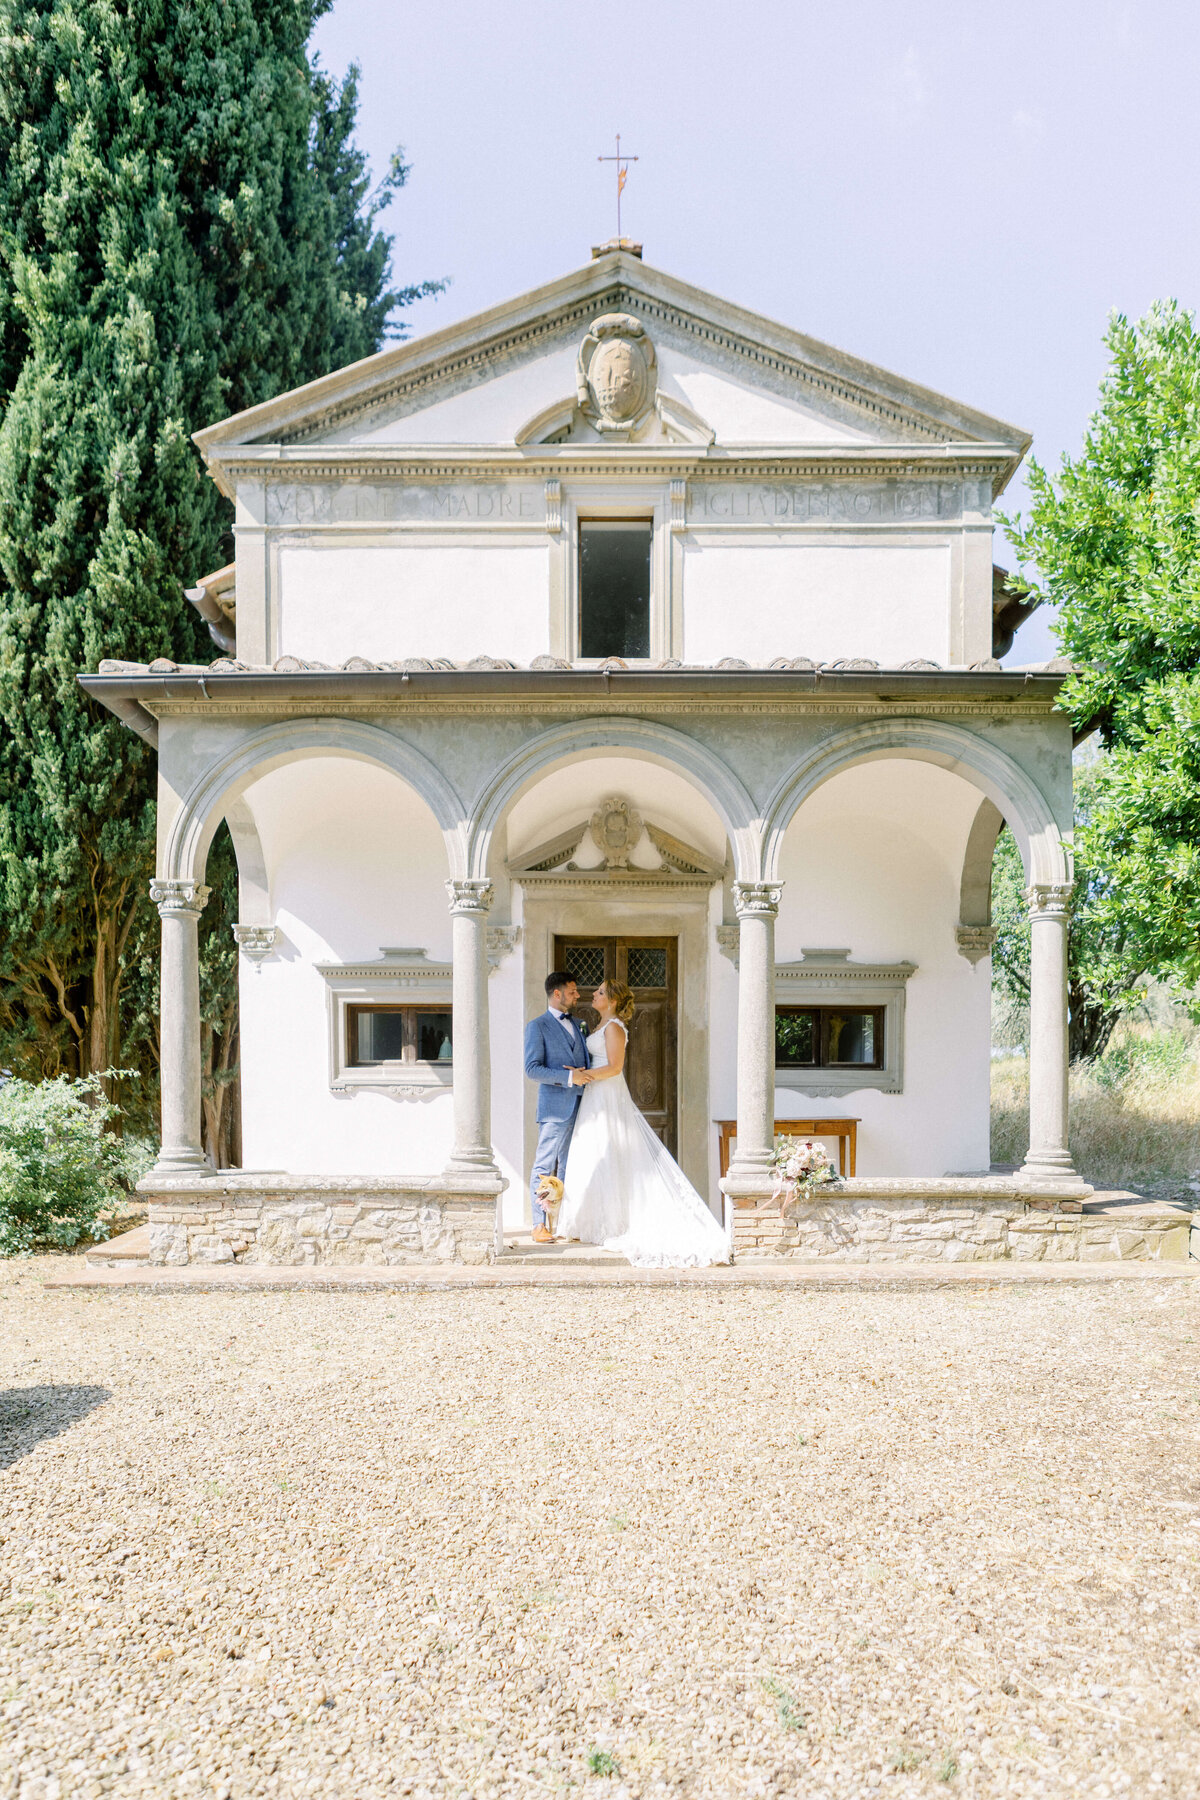 Wedding E&T - Tuscany - Italy 2019 22